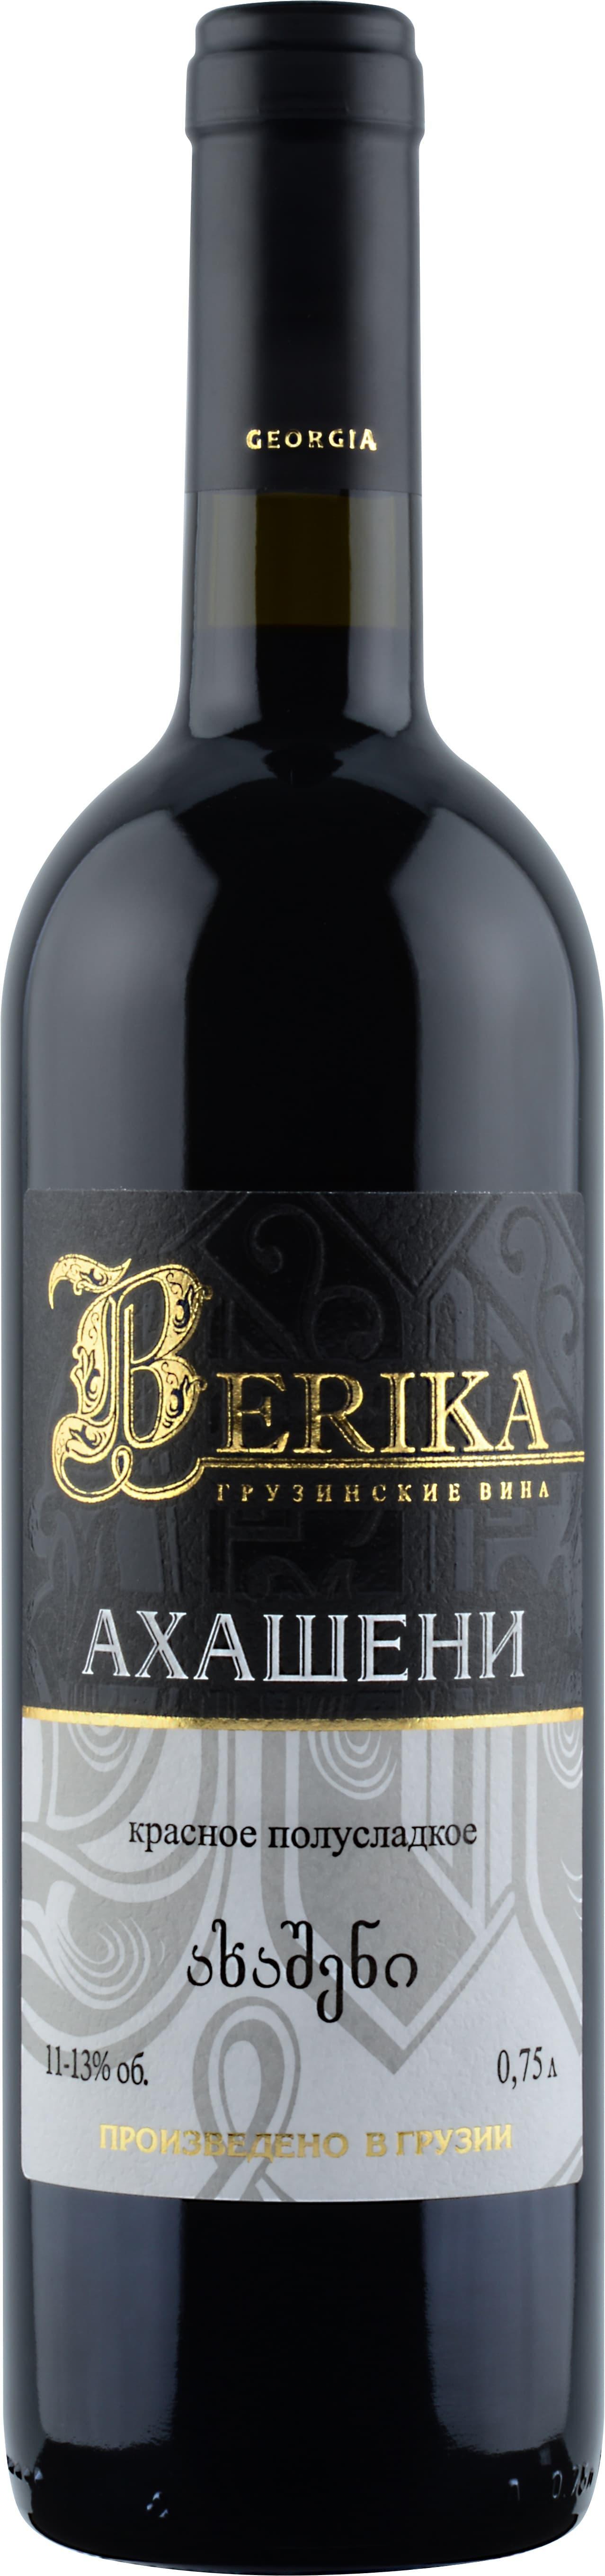 Вино Берика, Ахашени, красное п/сладкое Грузия 750 мл., стекло